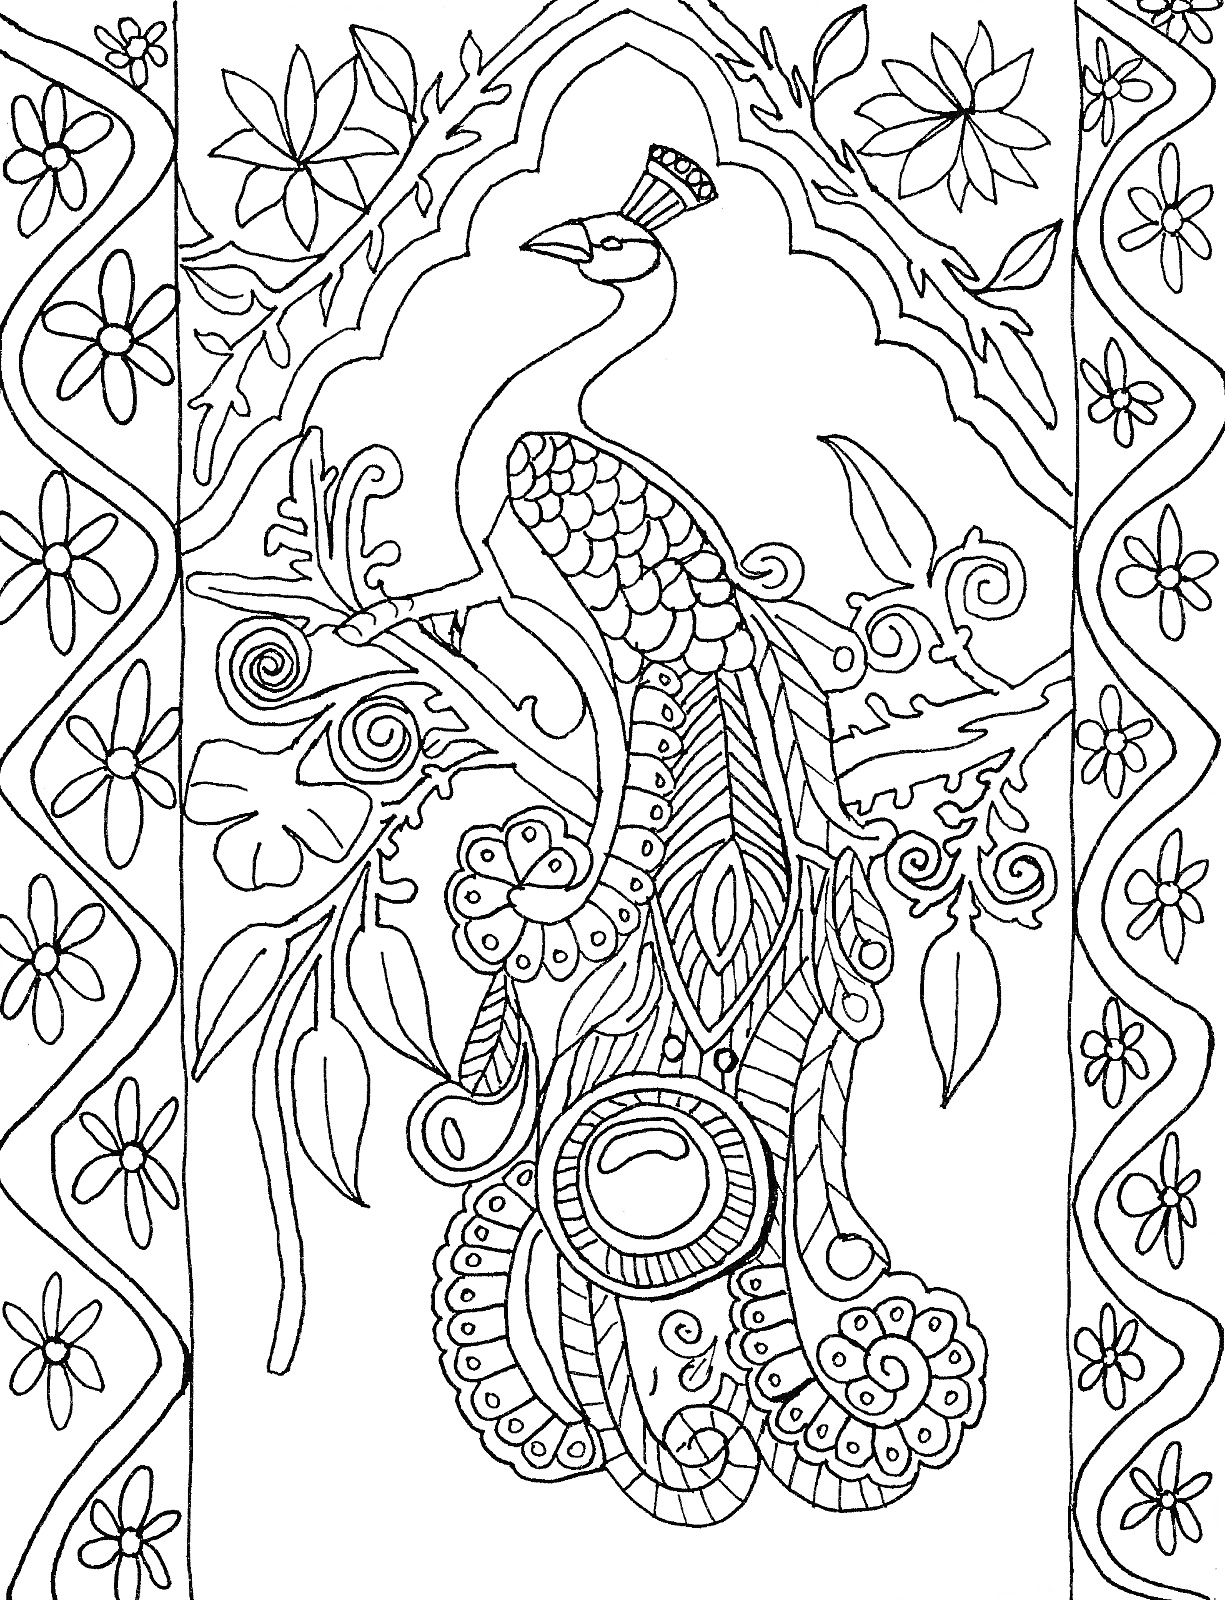 Раскраска Павлин на ветке с цветами и декоративными узорами